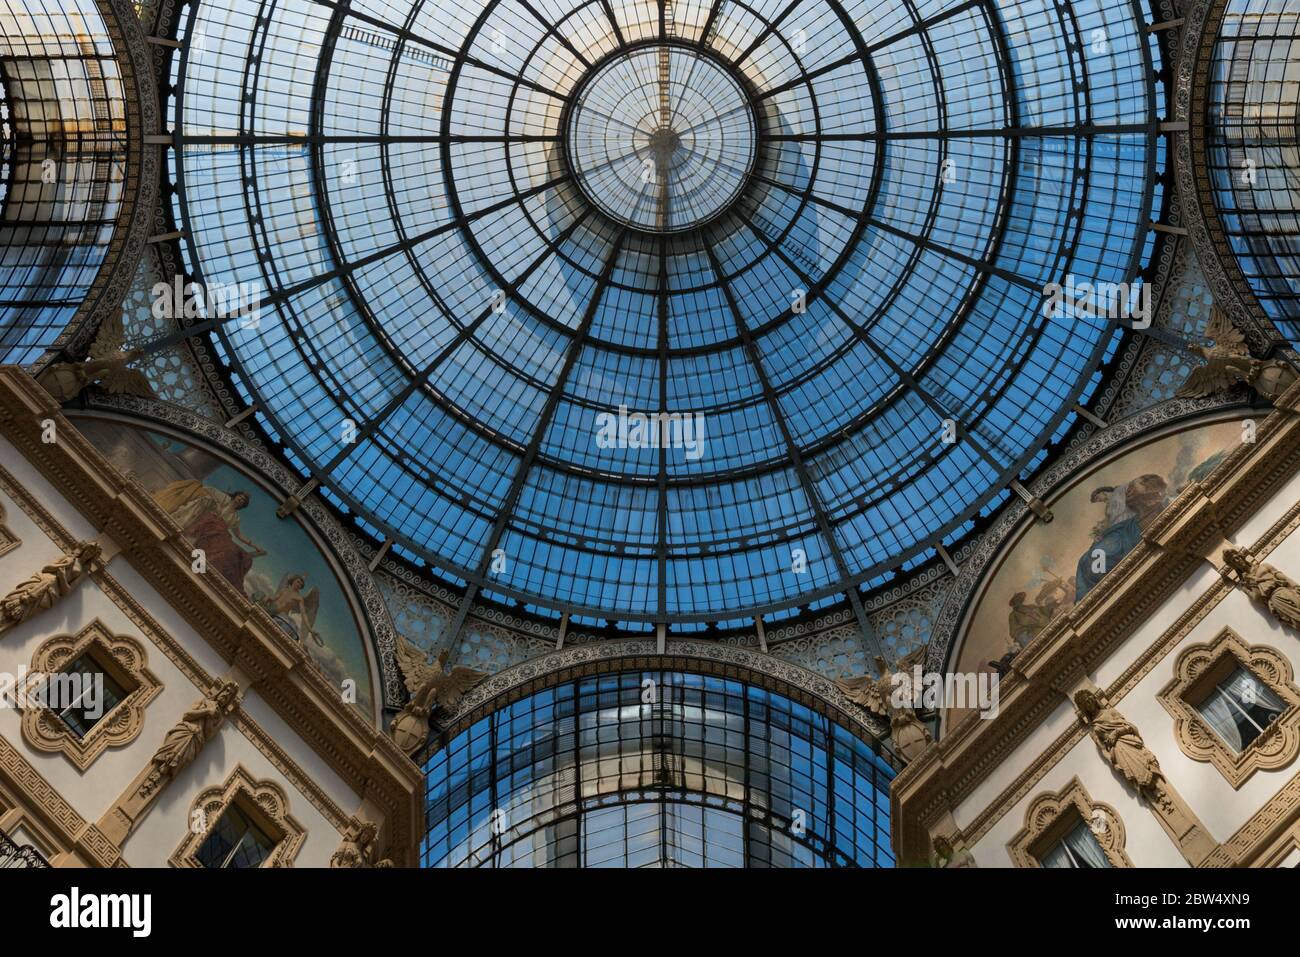 MILÁN, ITALIA - 16, MARZO de 2018: Imagen horizontal del techo de hierro y cristal de la Galería Vittorio Emanuele II, situada en Milán, Italia Foto de stock